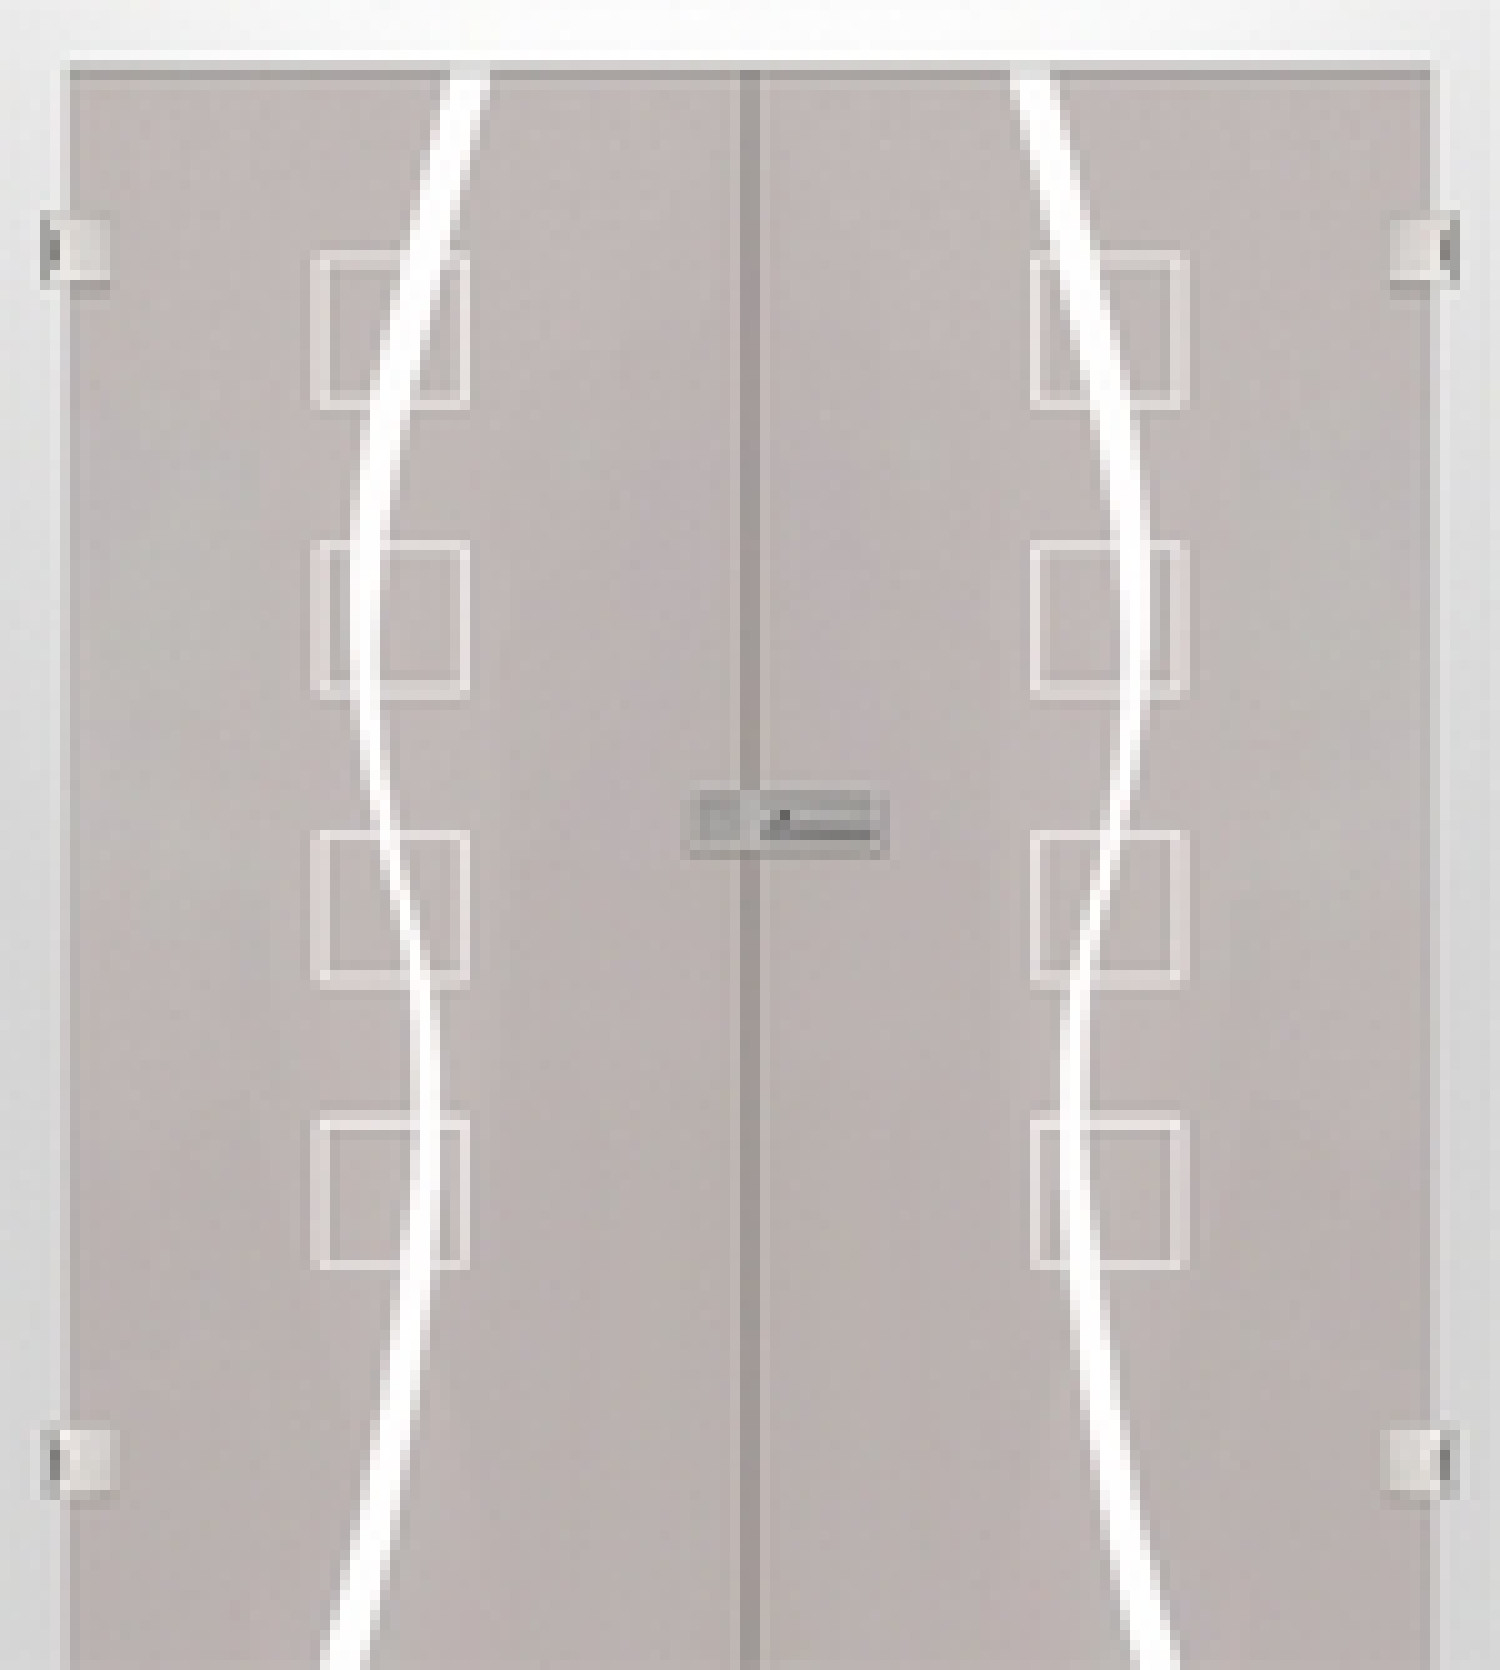 Bild von Catania Mattierung Doppelflügeltür mit Motiv matt - Erkelenz